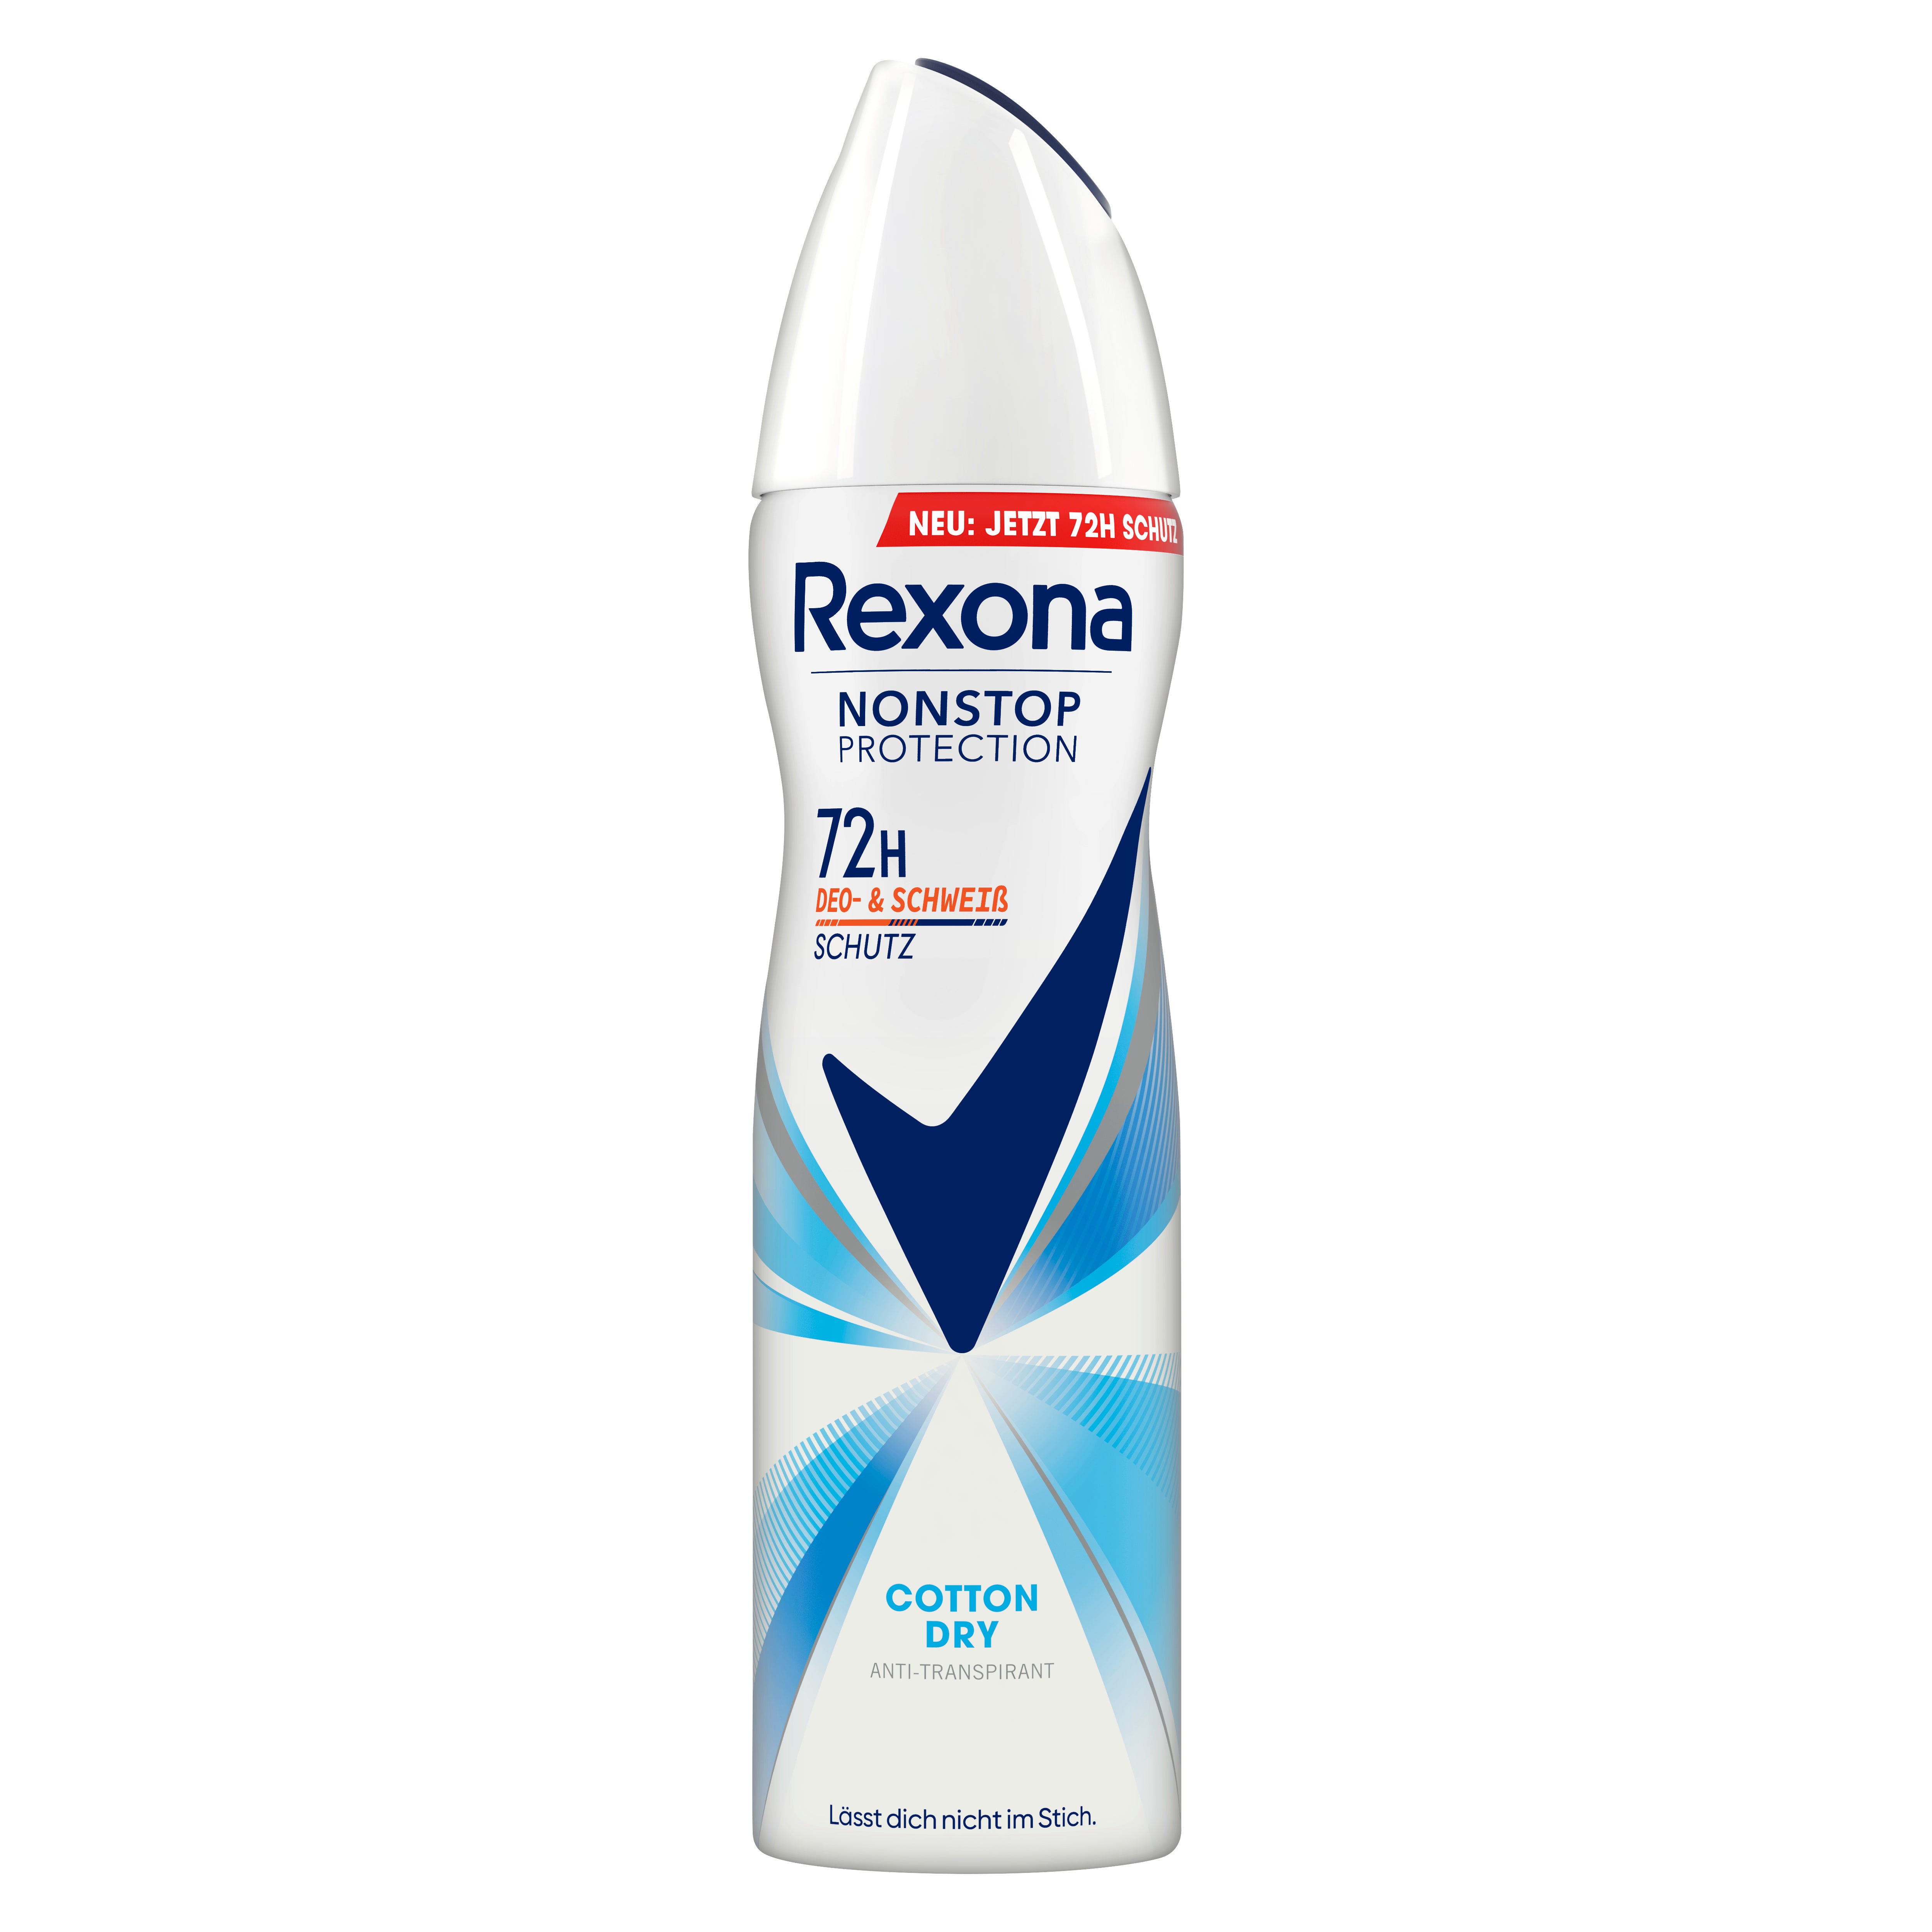 Rexona Nonstop Protection Deospray Cotton Dry Anti Transpirant mit 72 Stunden Schutz vor Schweiß und Körpergeruch 150 ml